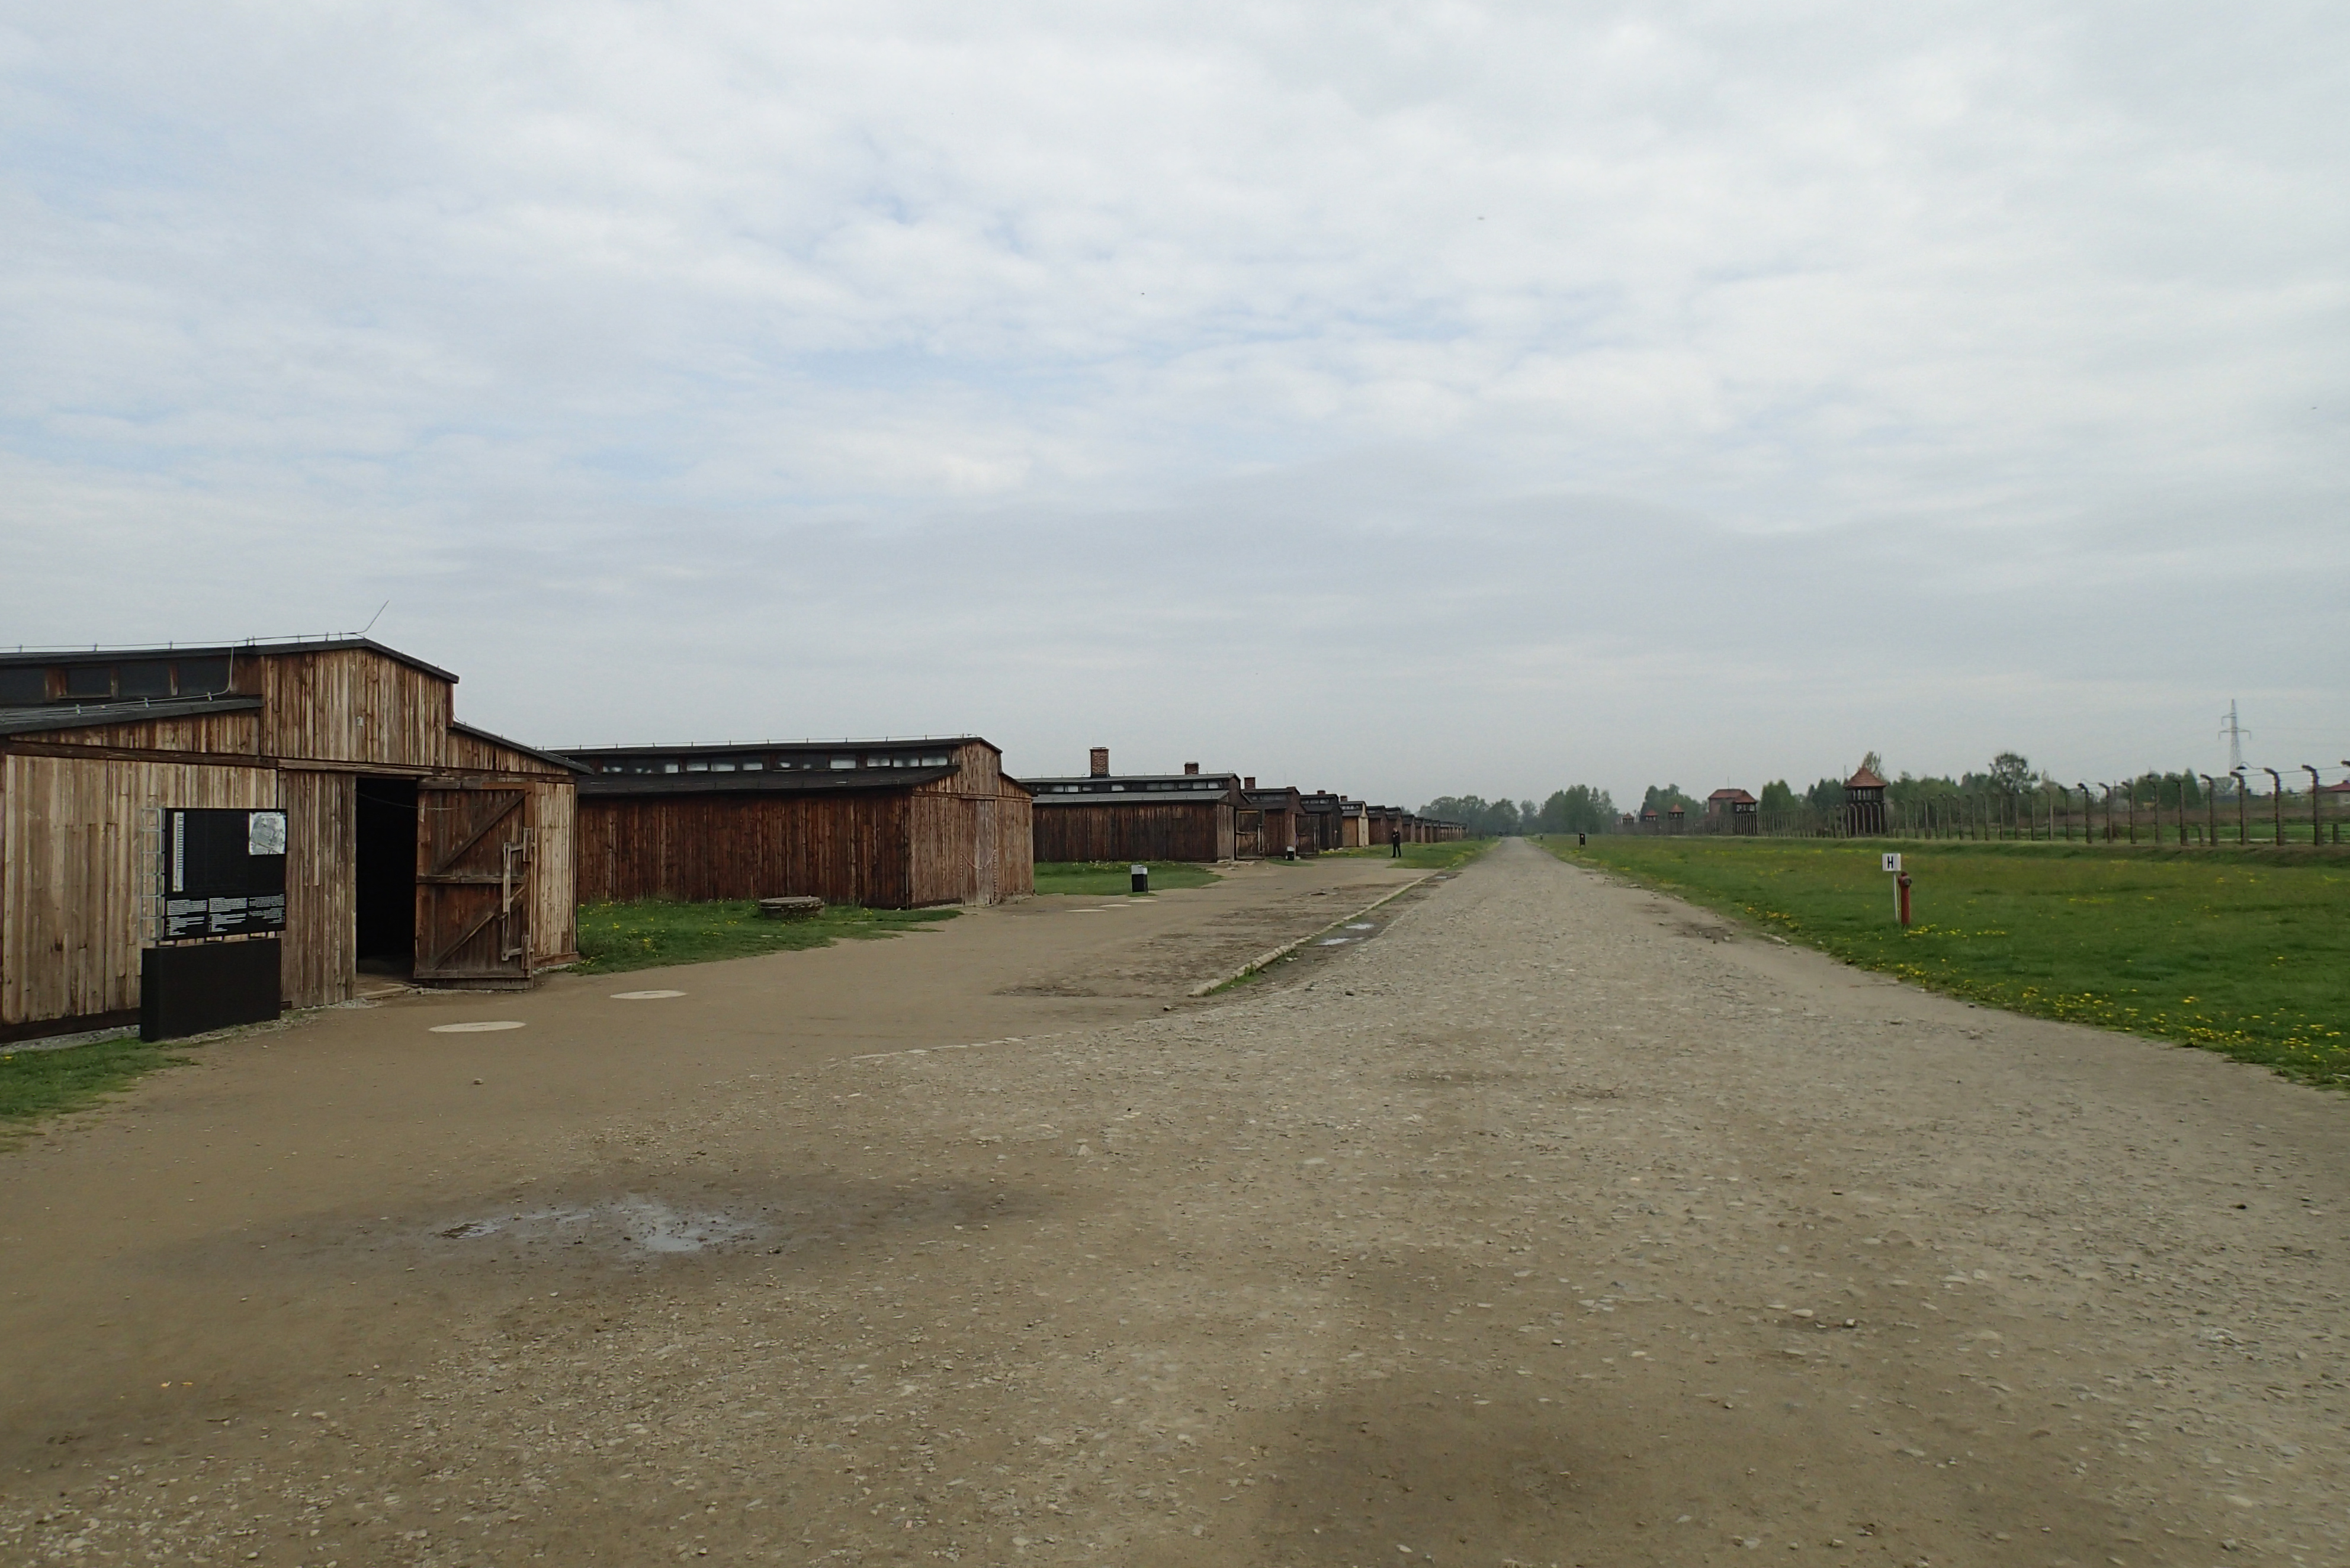 Barakken in kamp Birkenau